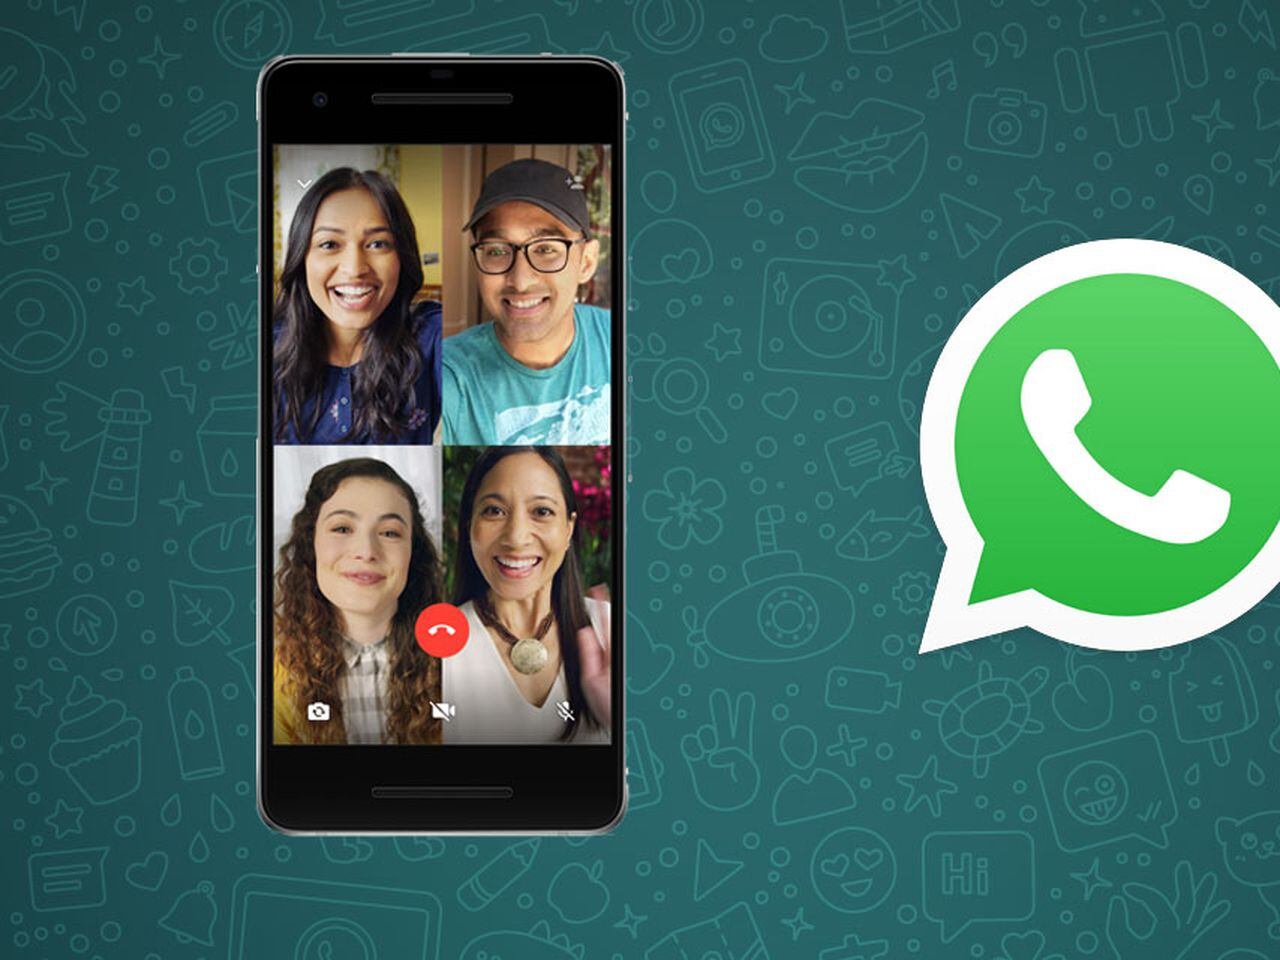 WhatsApp lanza app oficial para smartwatch: cómo funciona, DEPOR-PLAY